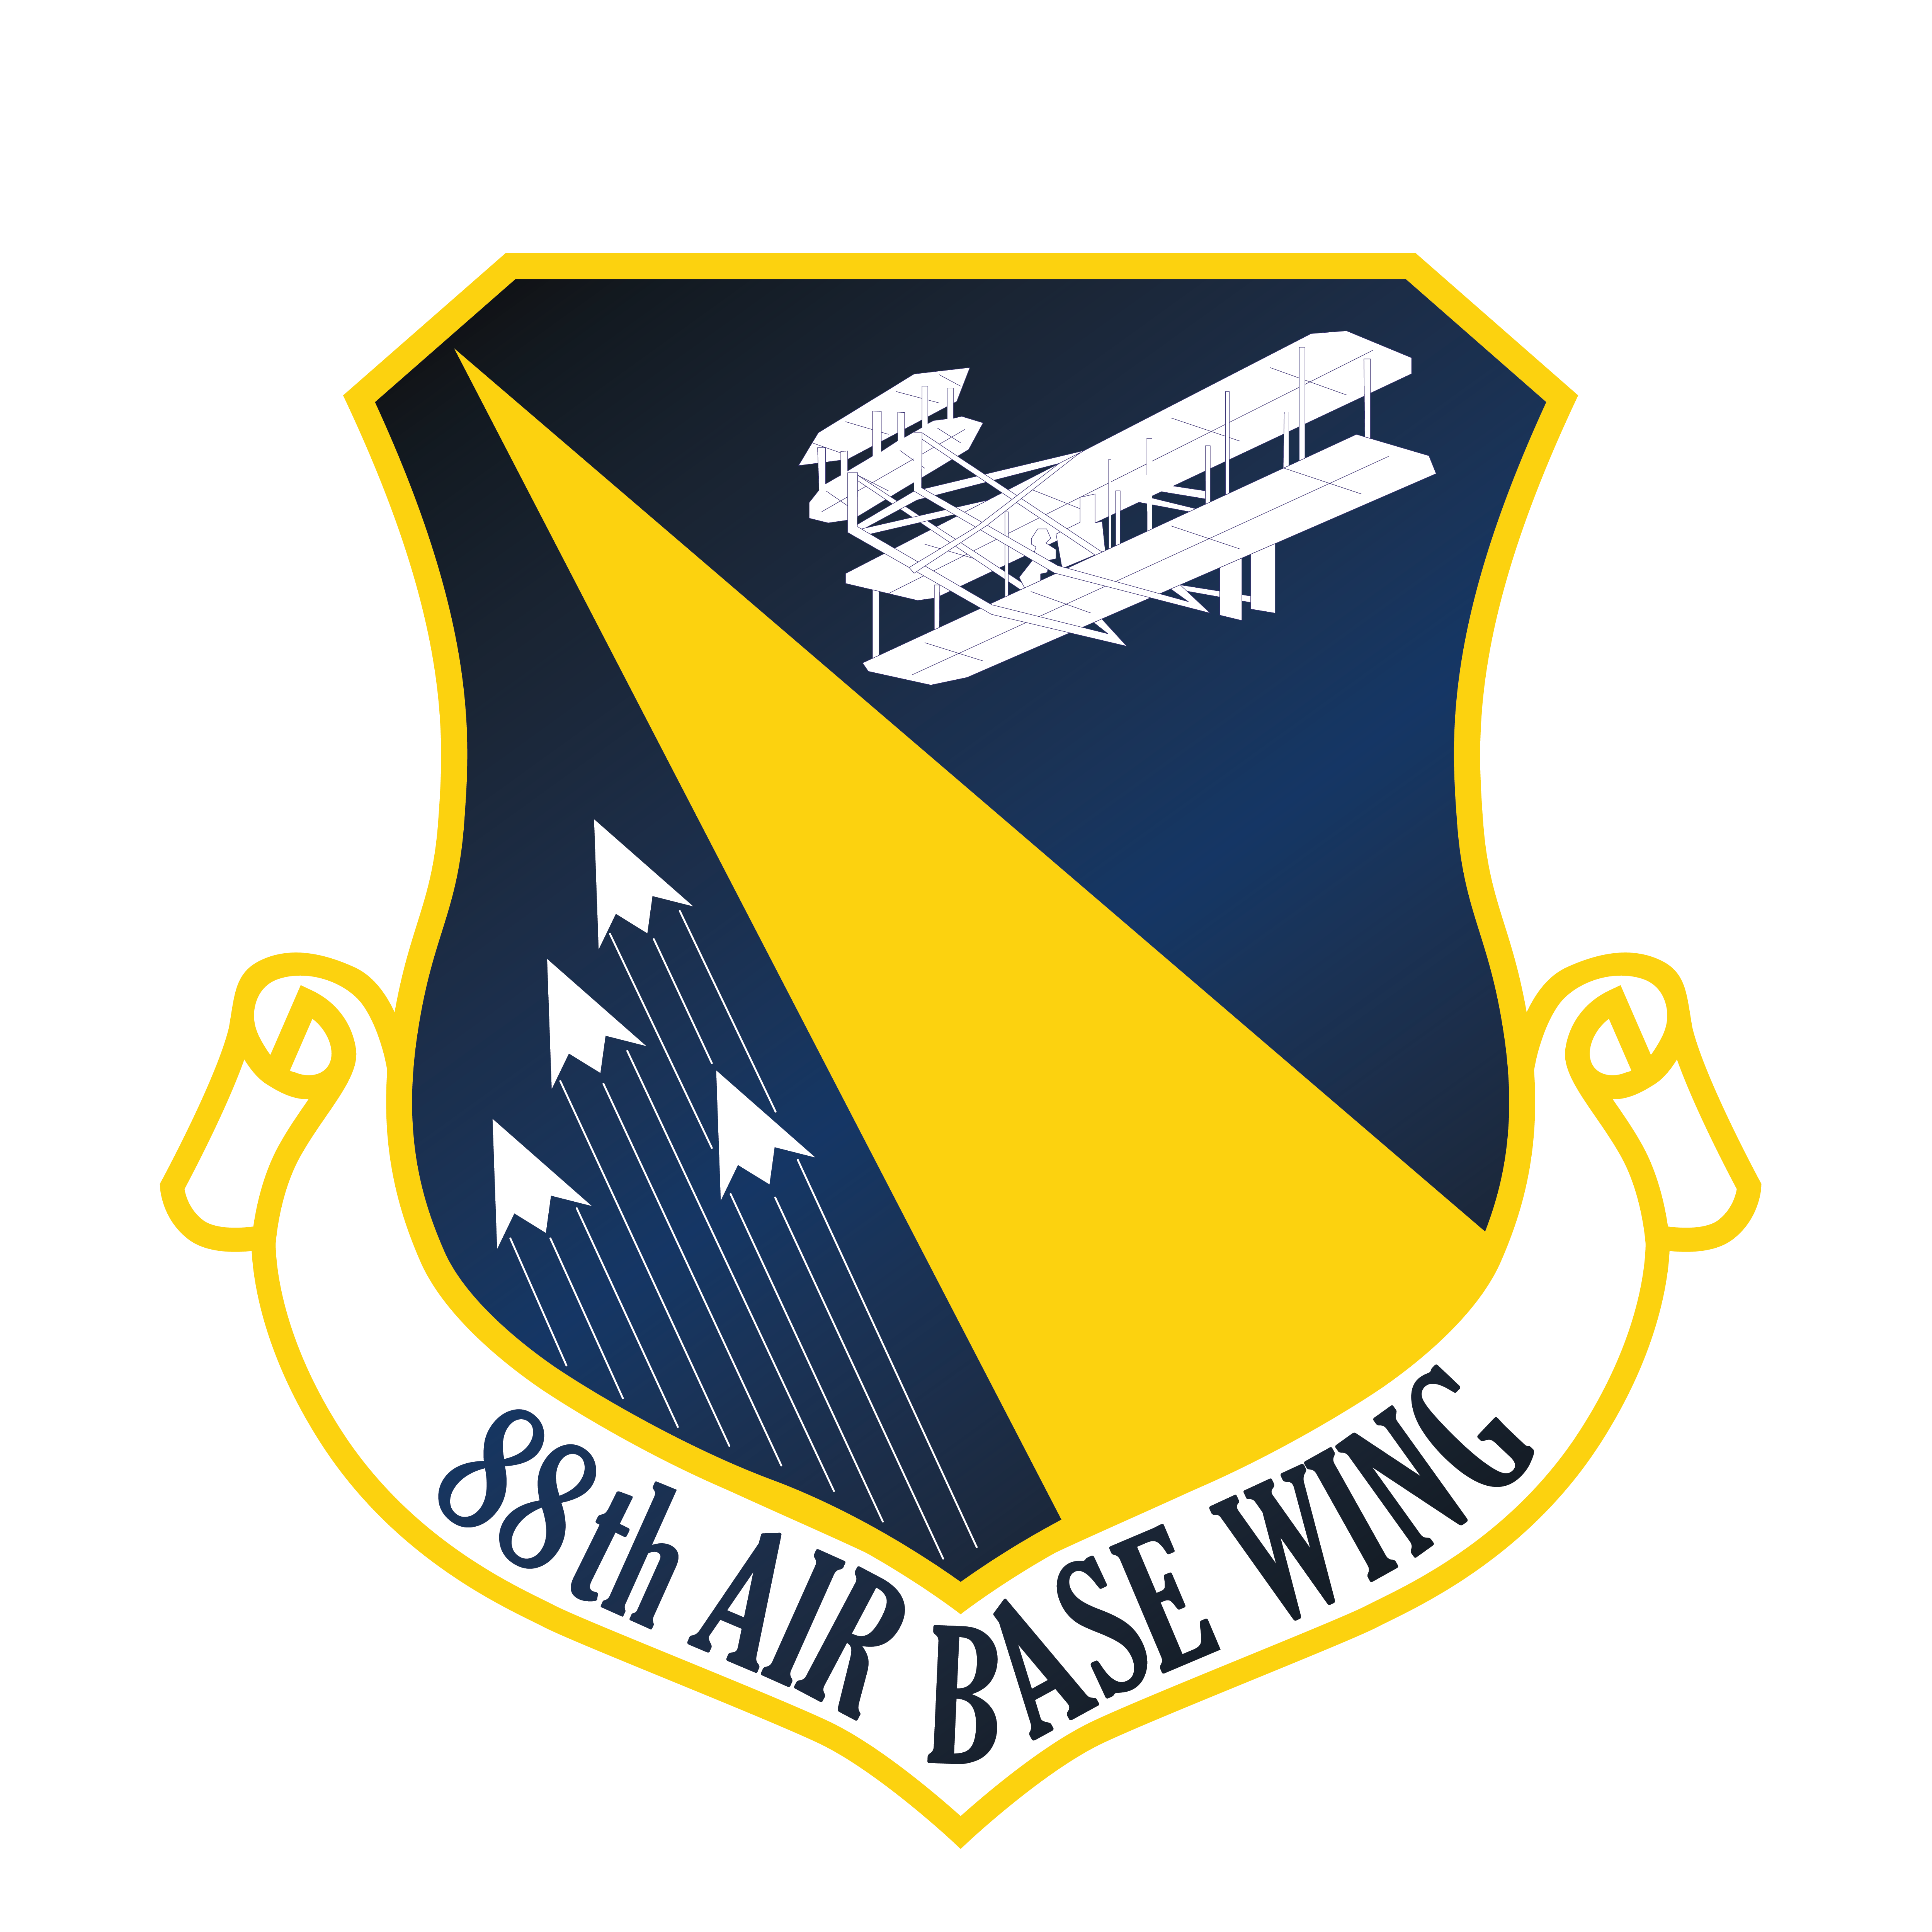 88th Air Base Wing shield